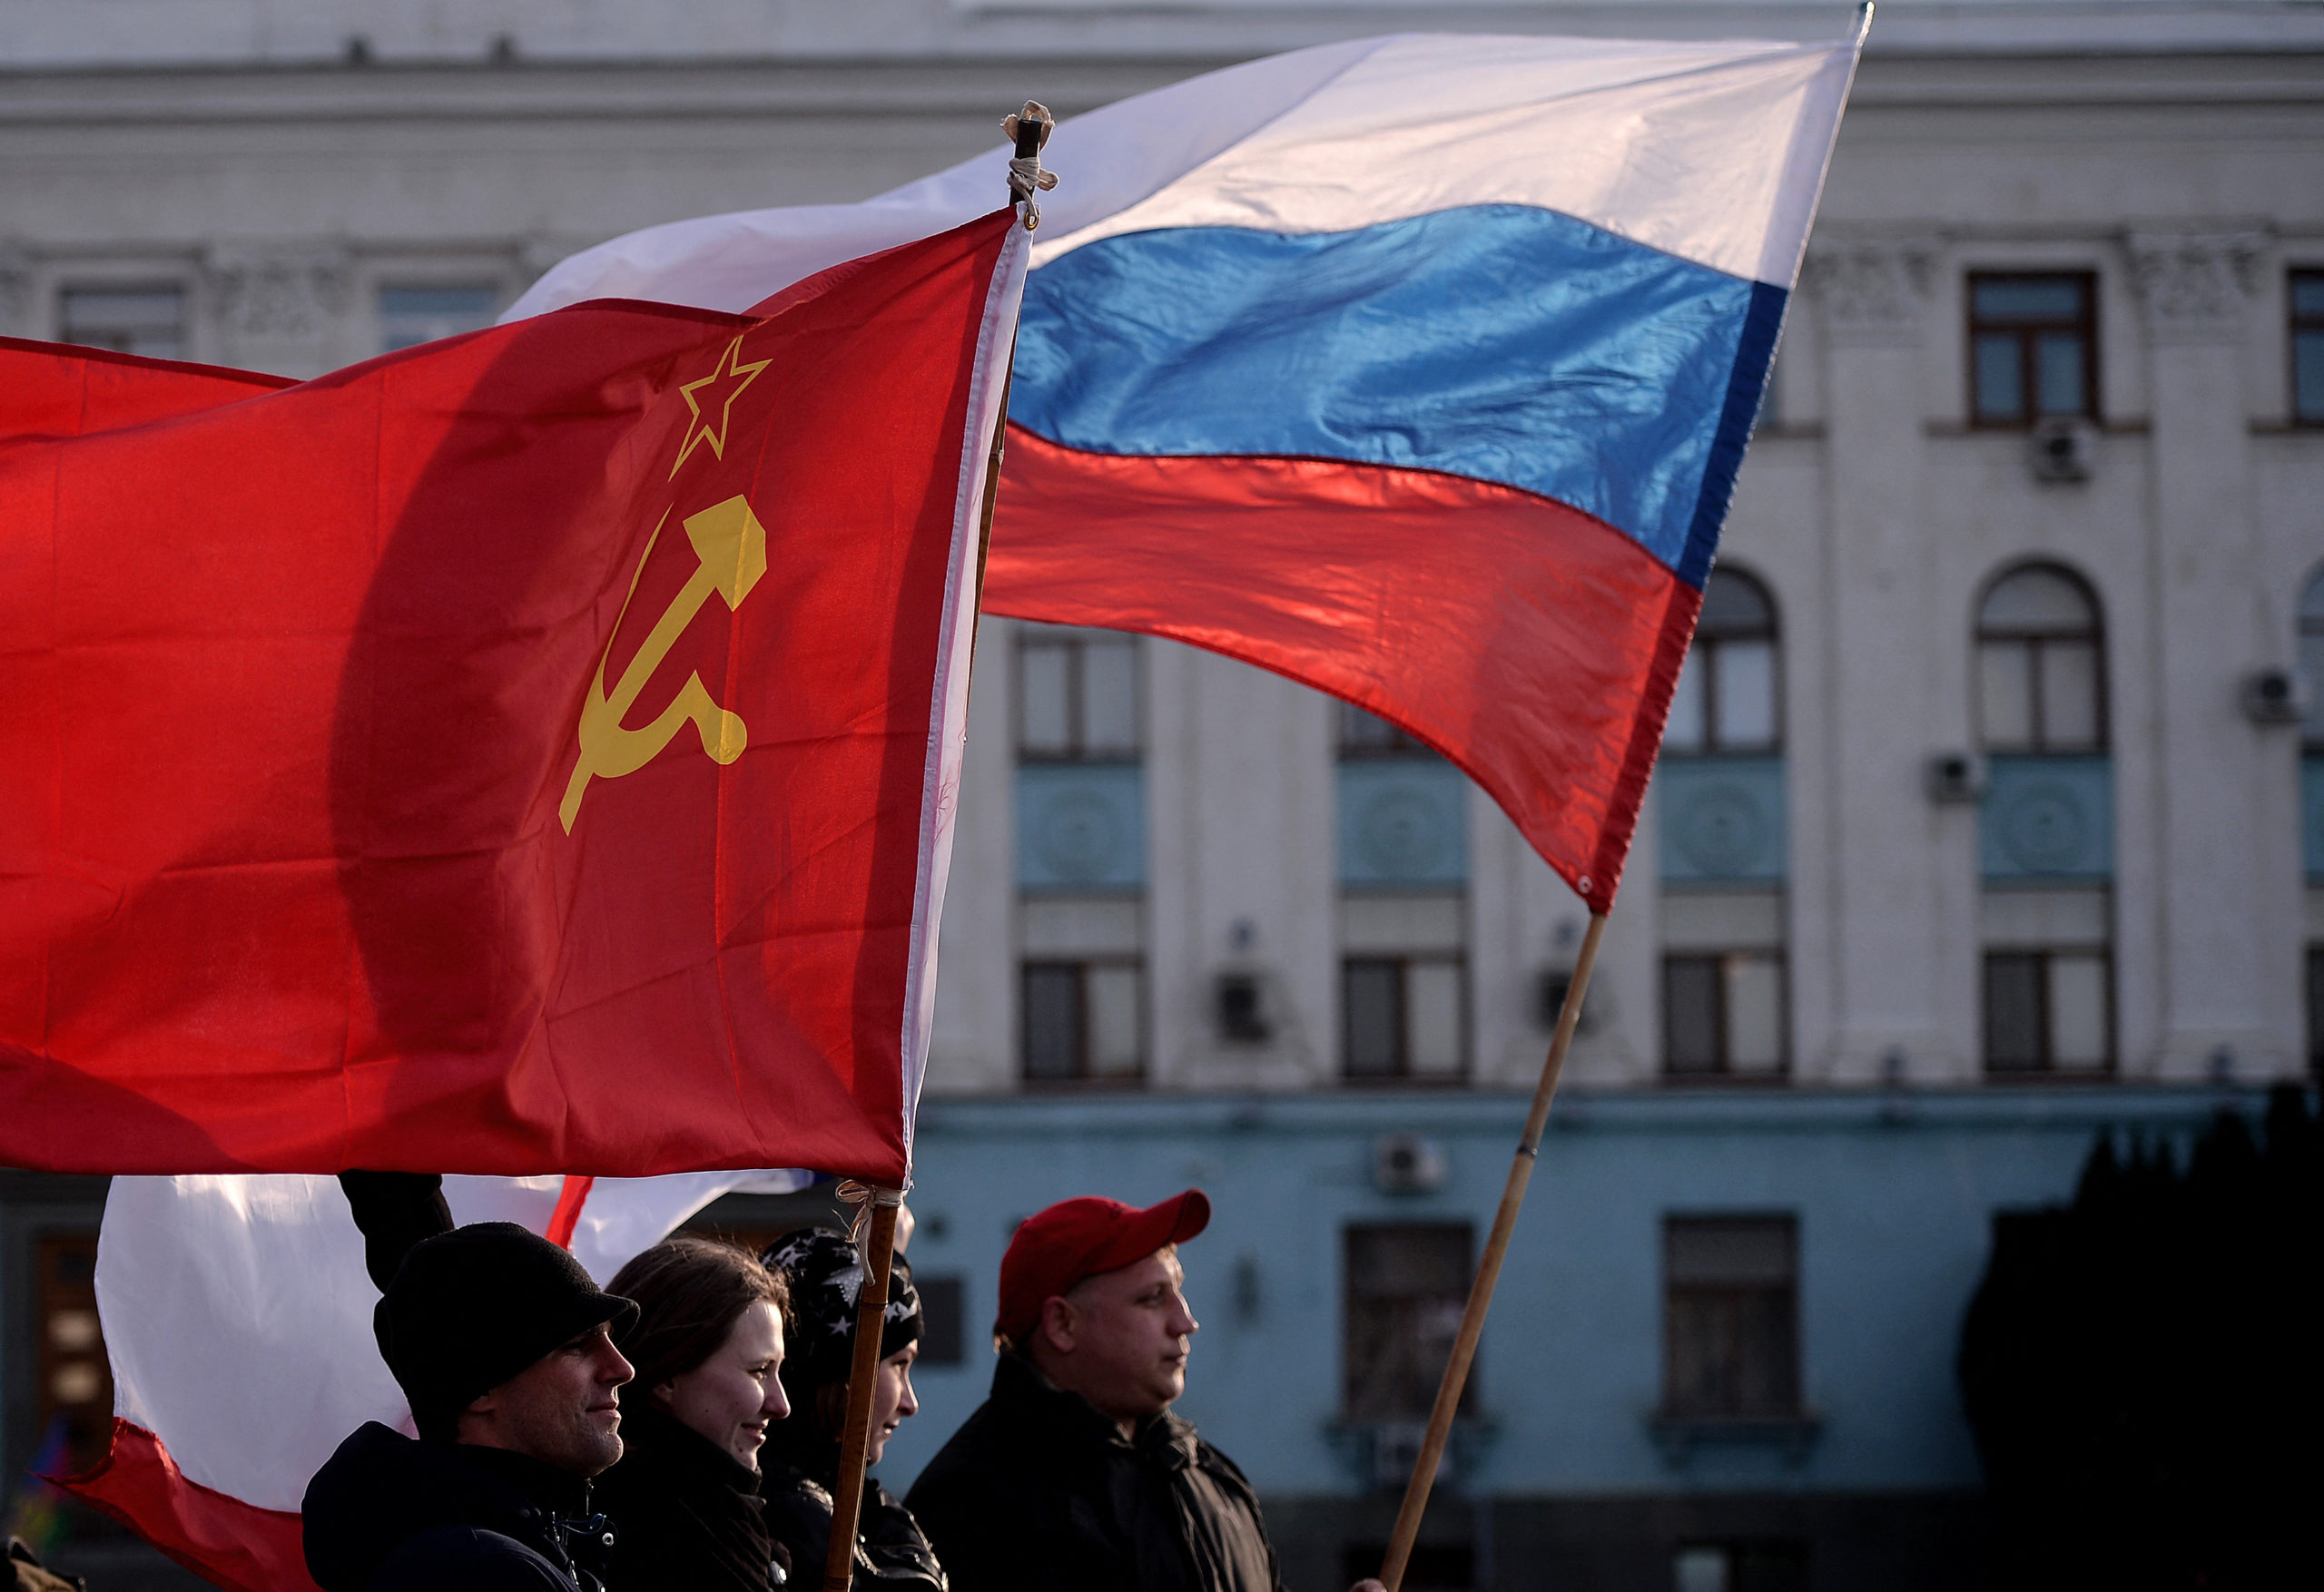 Cómo Rusia realiza operaciones con bandera falsa